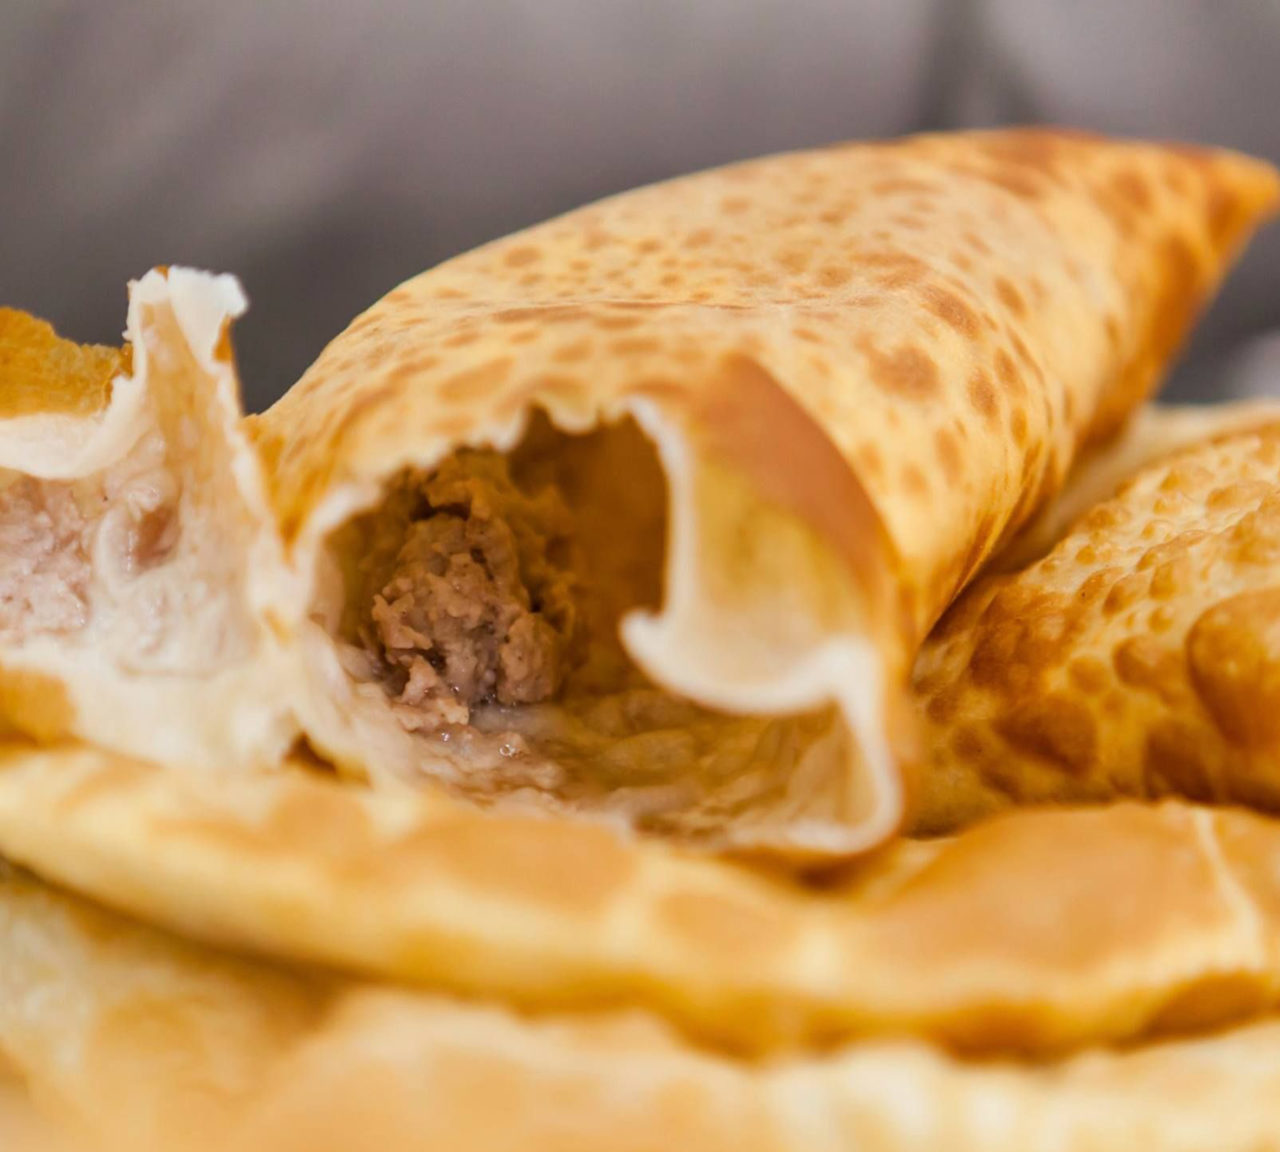 Yöresel deyişle çibörek, Eskişehir’in meşhur çiğ böreği. Malum, adı börek ama tavada pişiyor, fırında değil. Soslu Hangel, şehrin en özel lezzetlerinden.